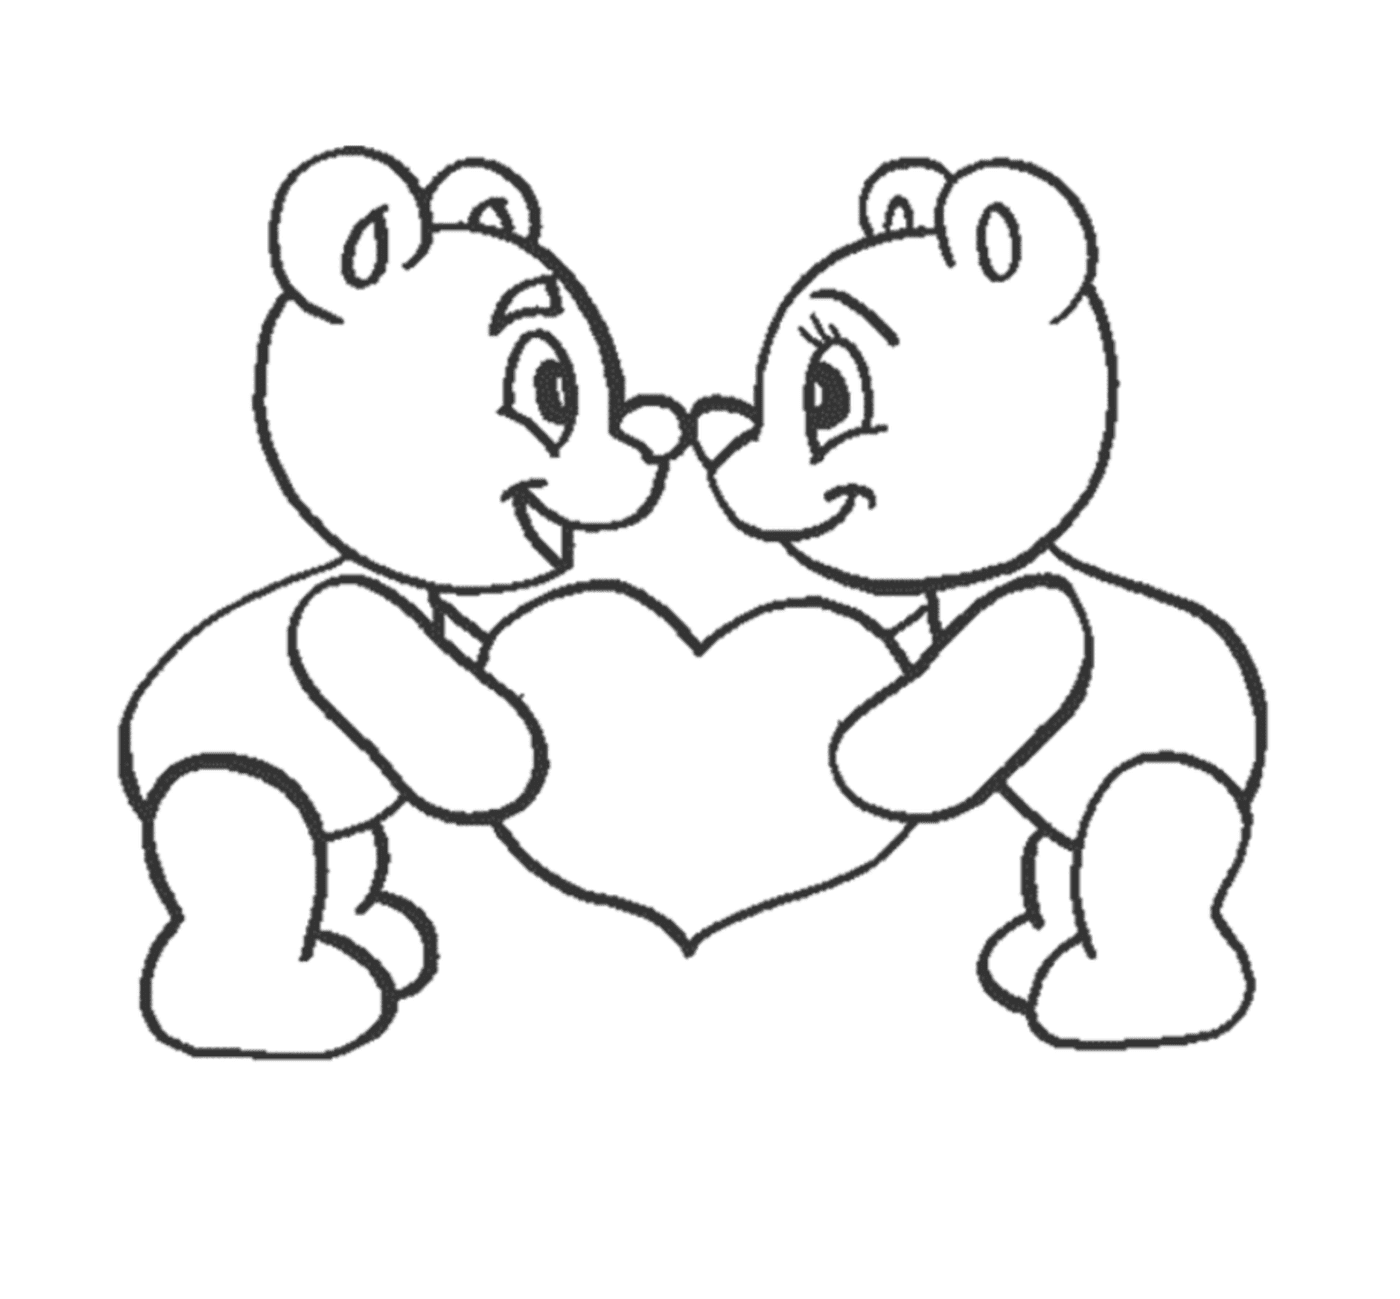  Zwei Teddybären, die ein Herz in ihren Händen halten 